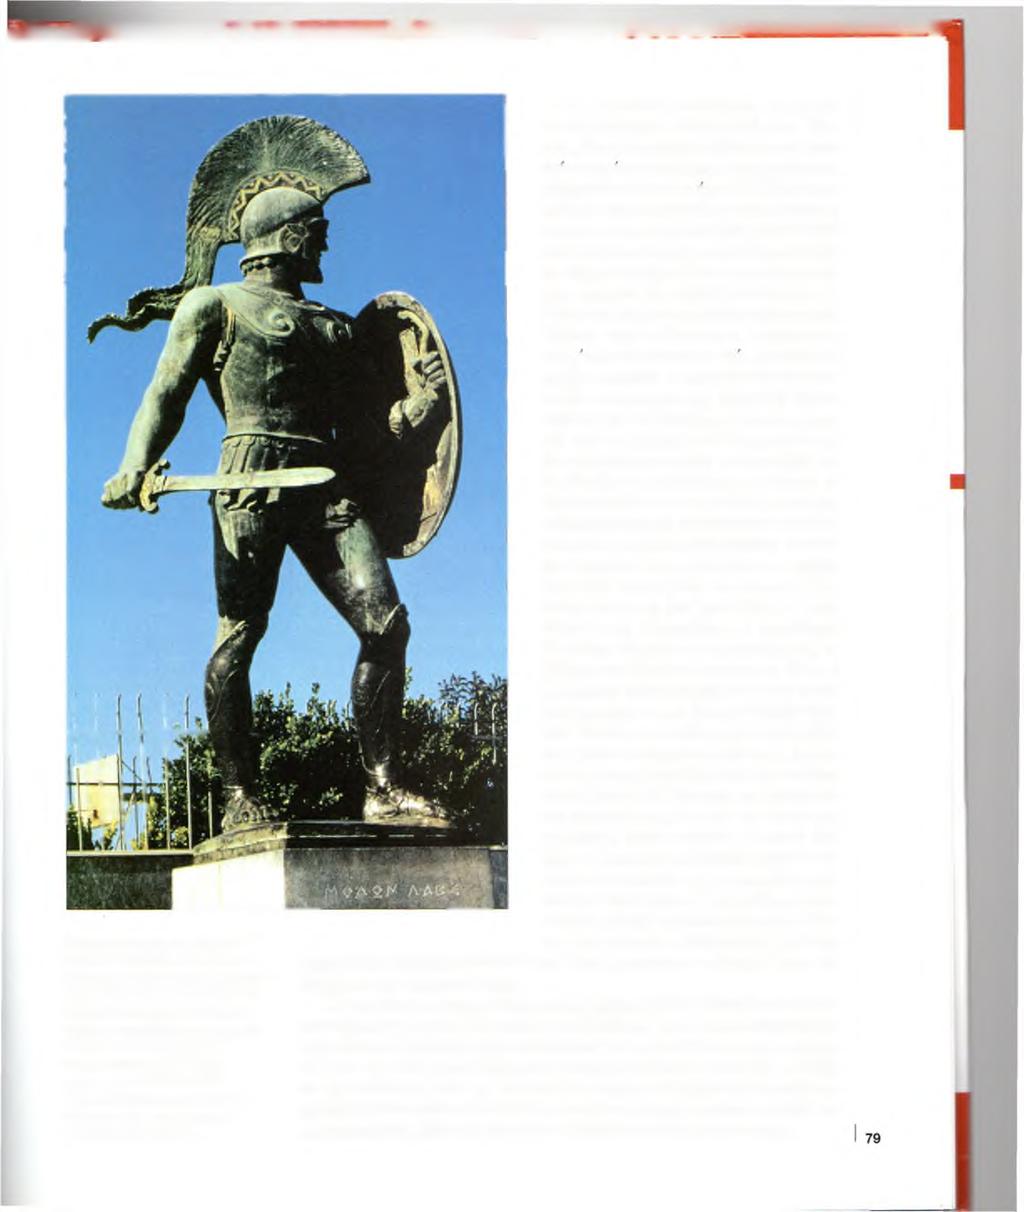 Σύγχρονο άγαλμα του Σπαρτιάτη βασιλιά Λεωνίδα στο κέντρο της Σπάρτης.